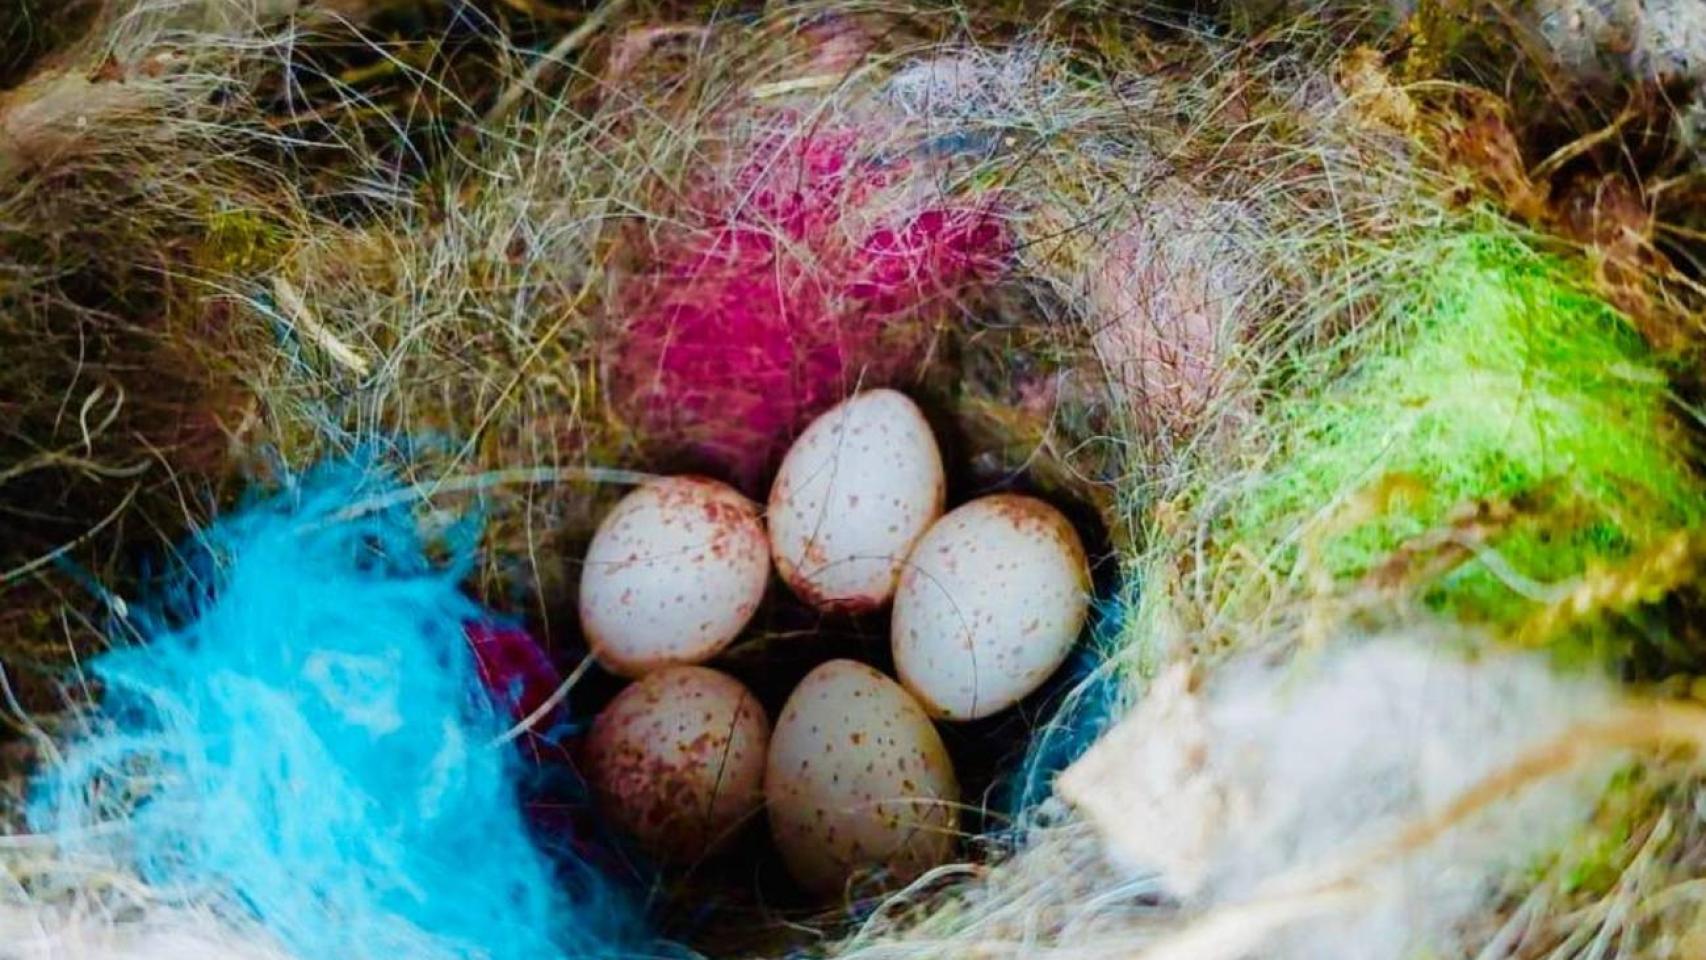 Un nido de ave construido con materiales humanos.